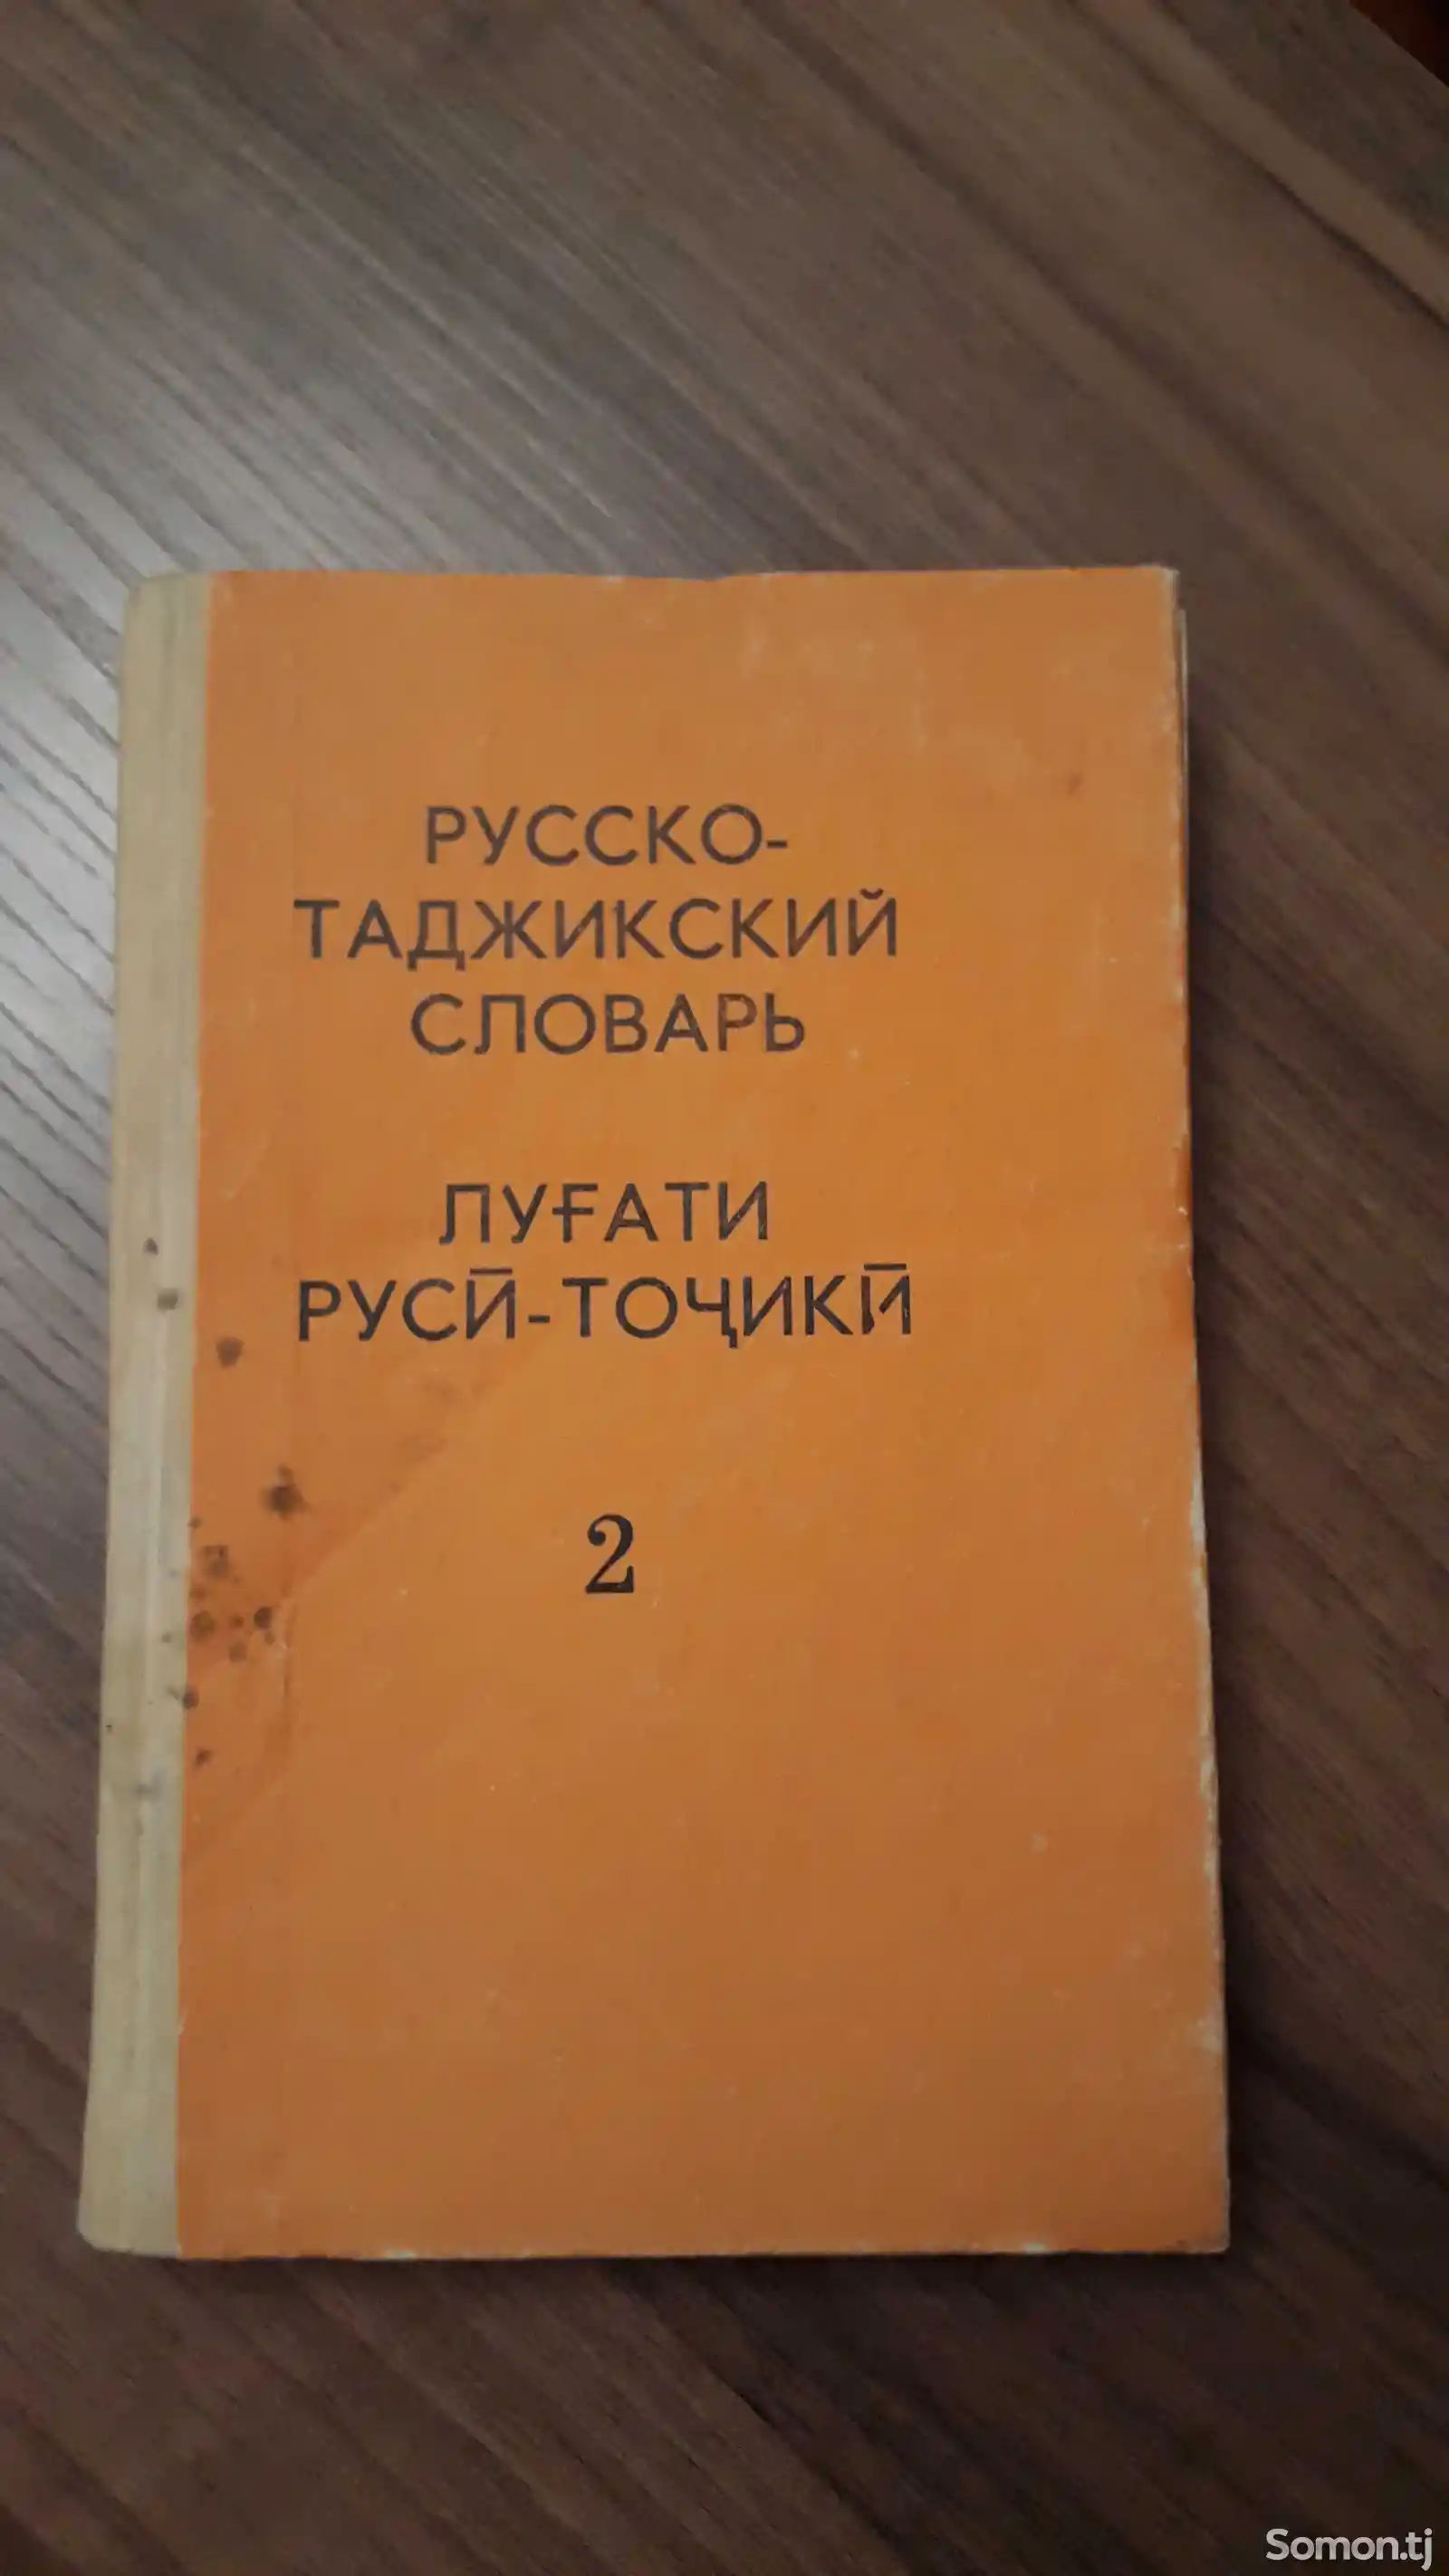 Книга Словарь Русско -таджикский-1